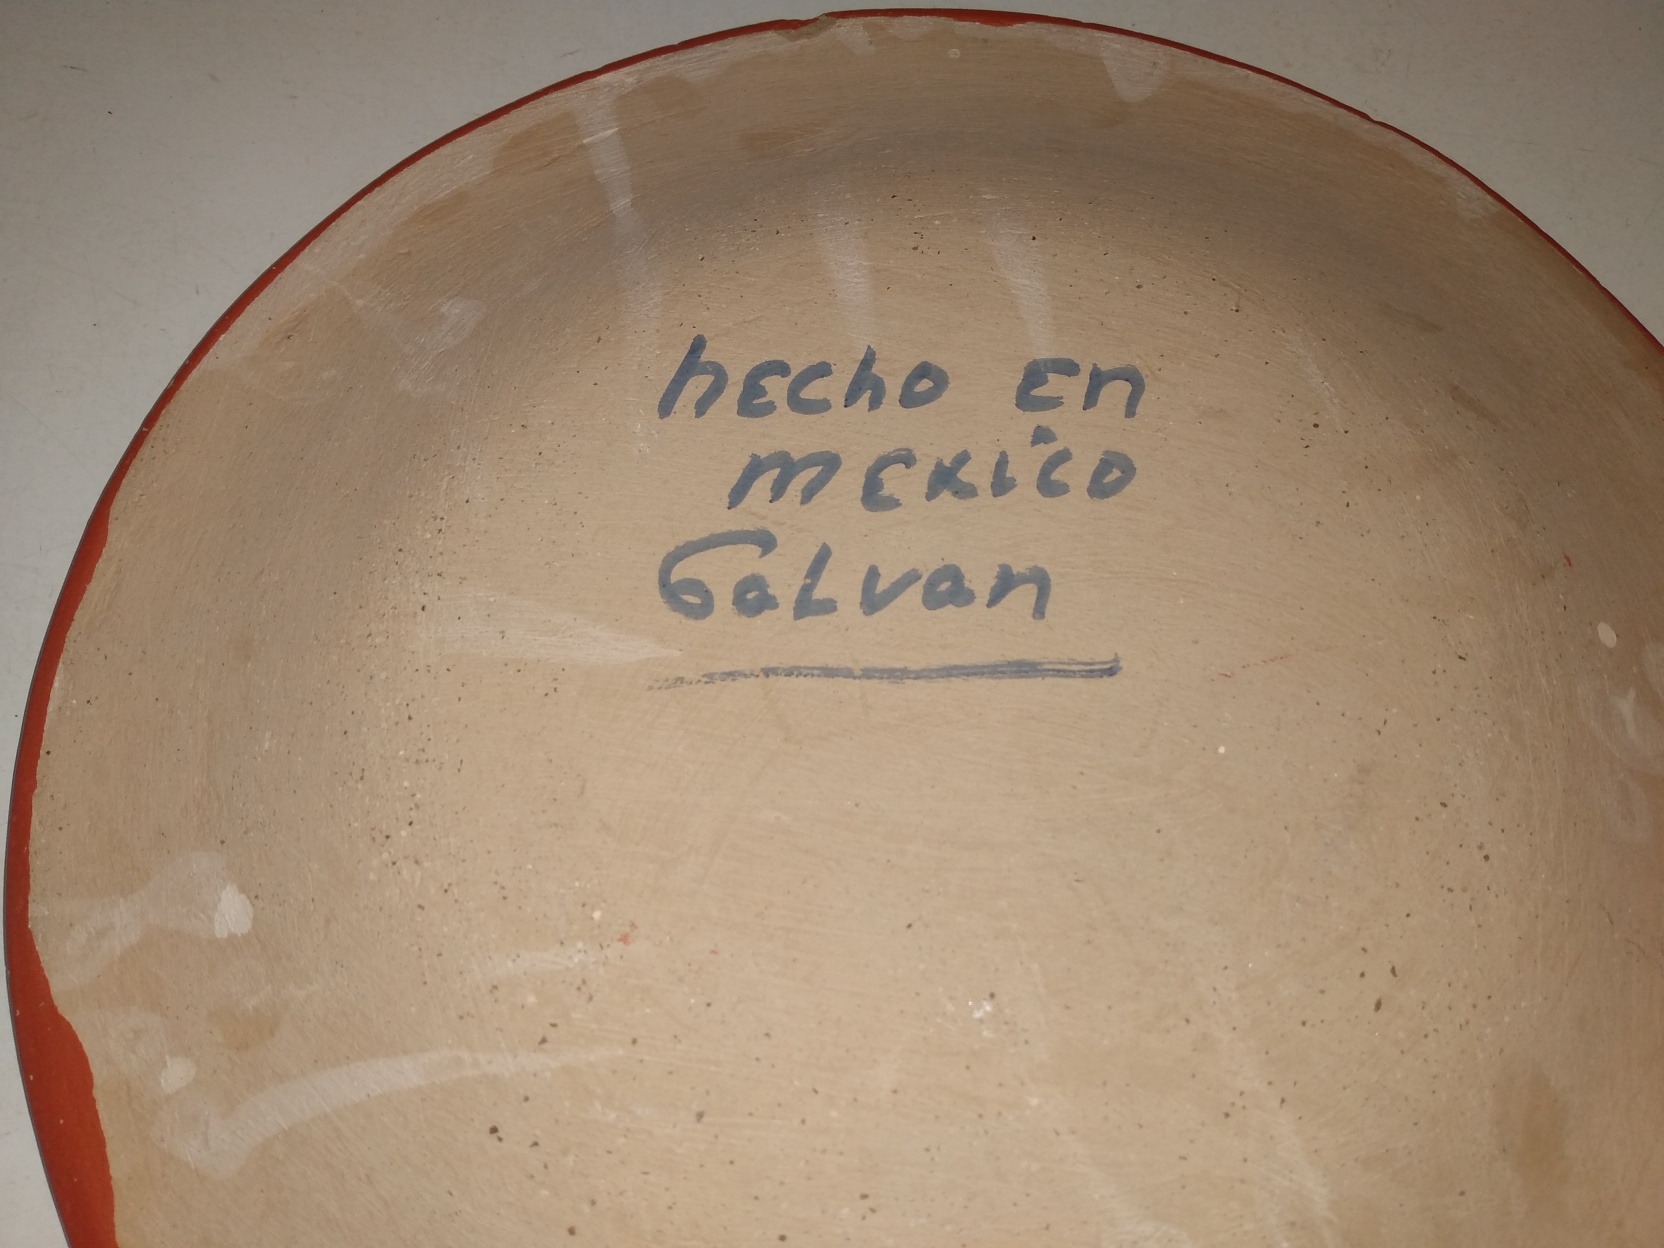 Galvan Plate 3.jpg